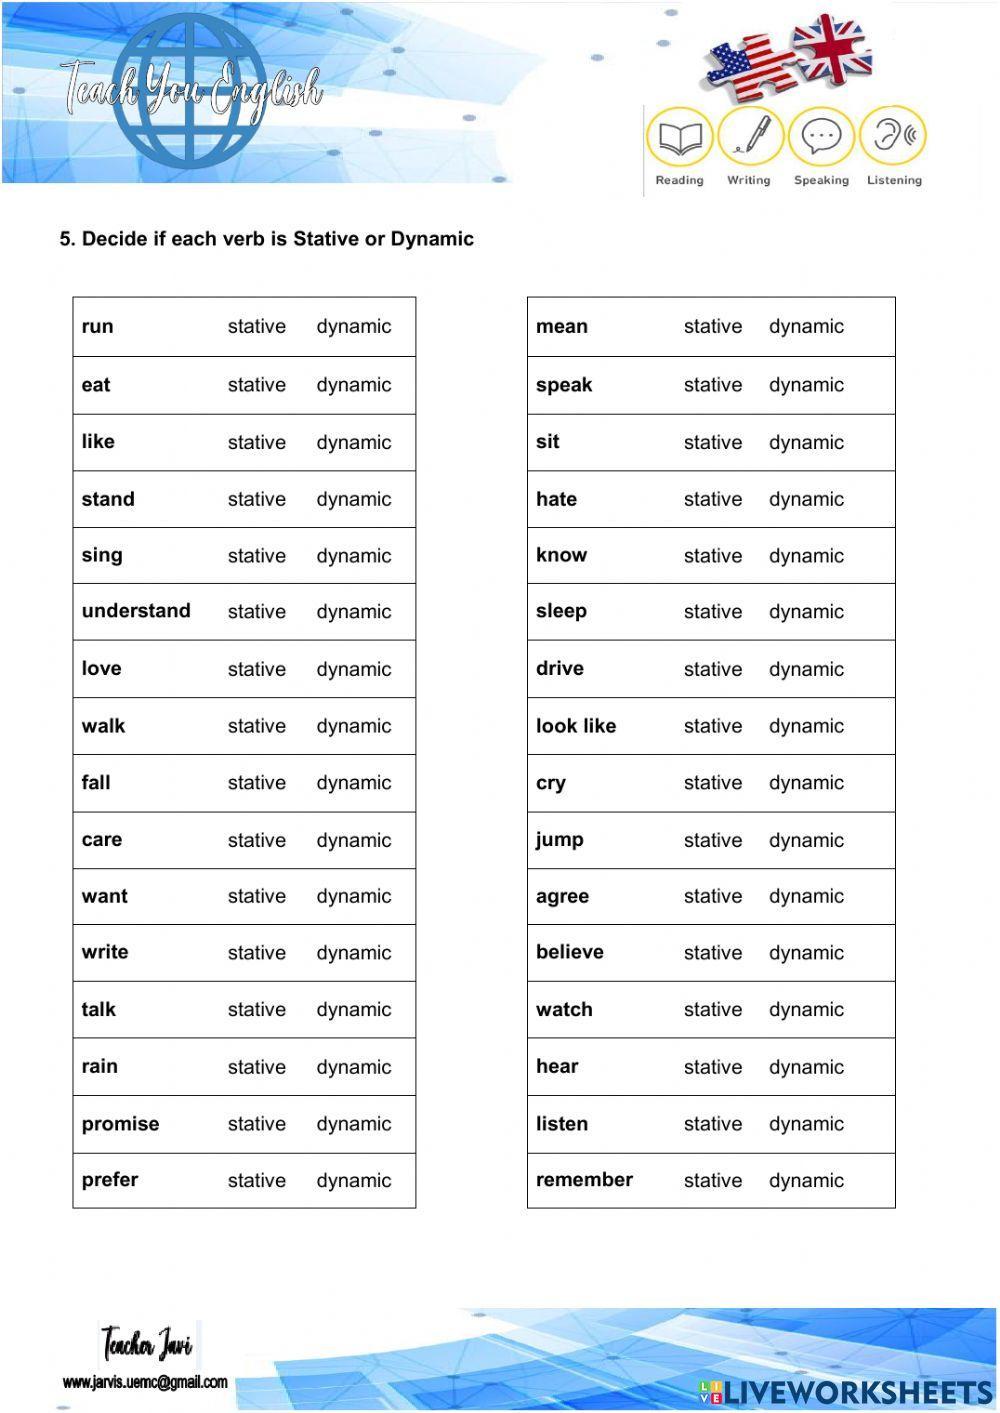 Stative verbs - Dynamic verbs